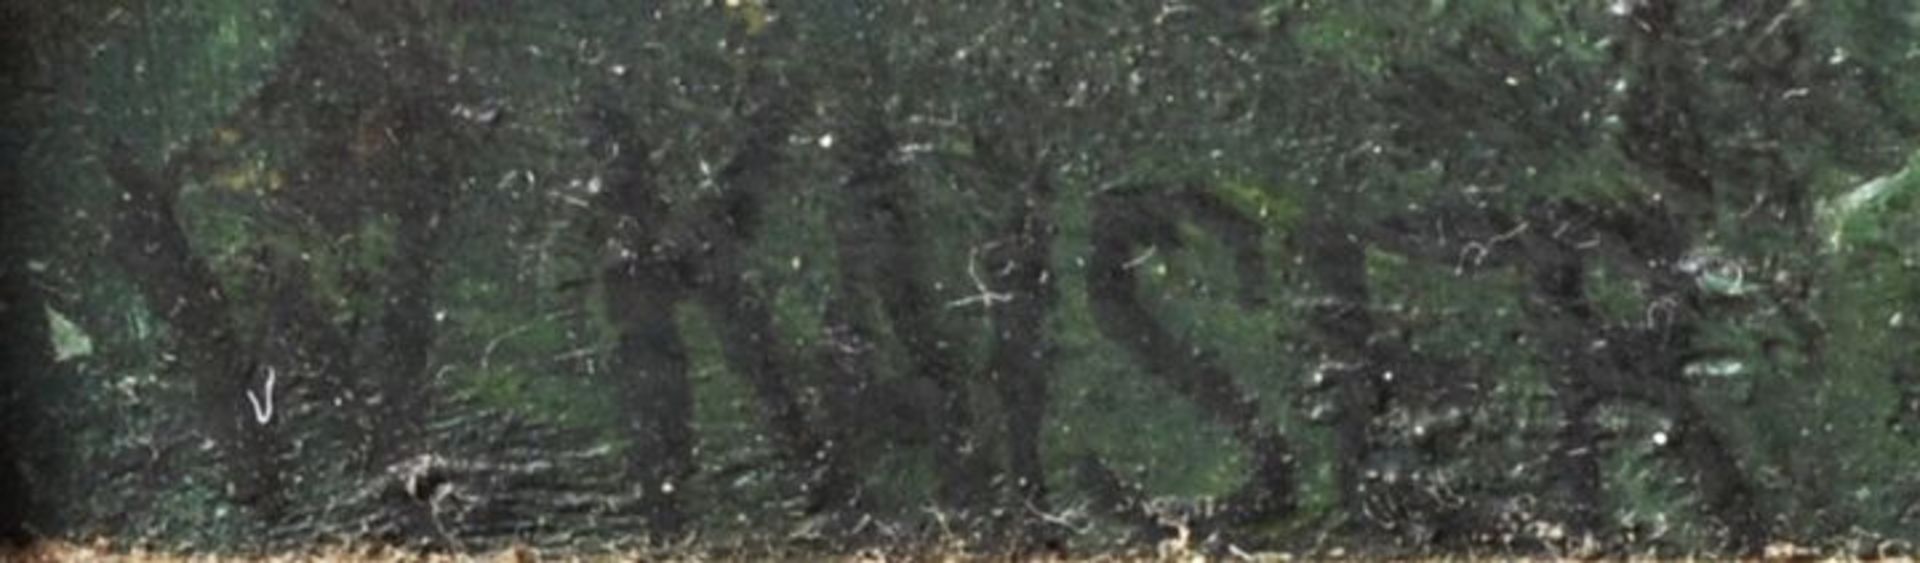 Unbekannter Künstler (Kaiser, W.)Kleines Haus am See. Öl auf Holz.Ohne Jahr. Signiert u.li. W. - Bild 3 aus 3